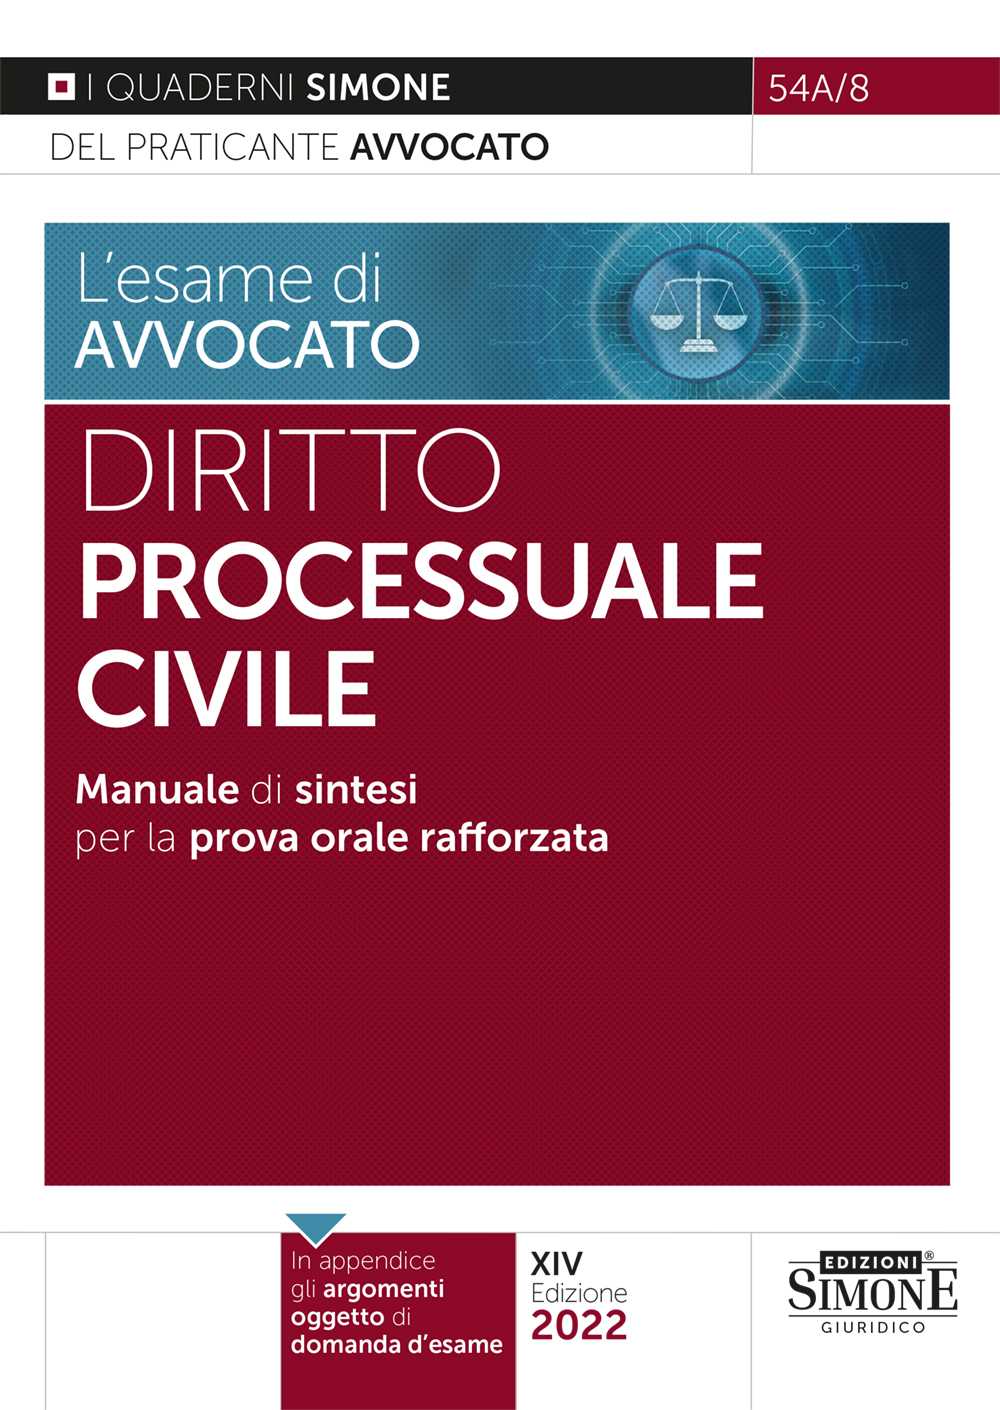 [Ebook] L'esame di avvocato - Diritto Processuale Civile - Manuale di sintesi per la prova orale rafforzata